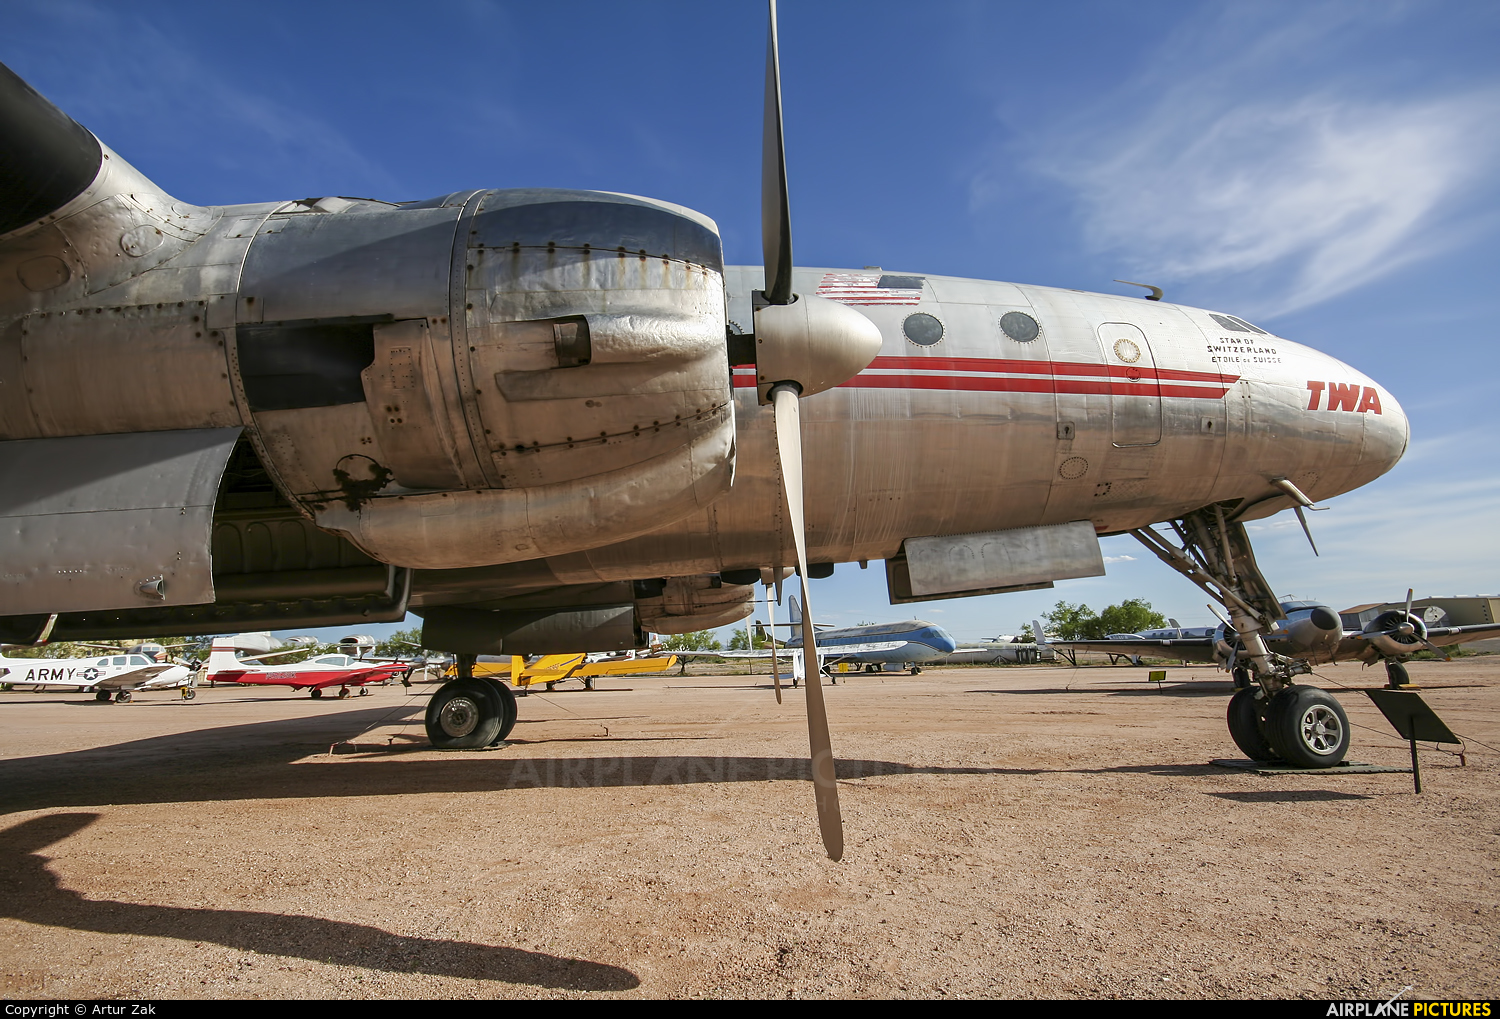 TWA N90831 aircraft at Tucson - Pima Air & Space Museum